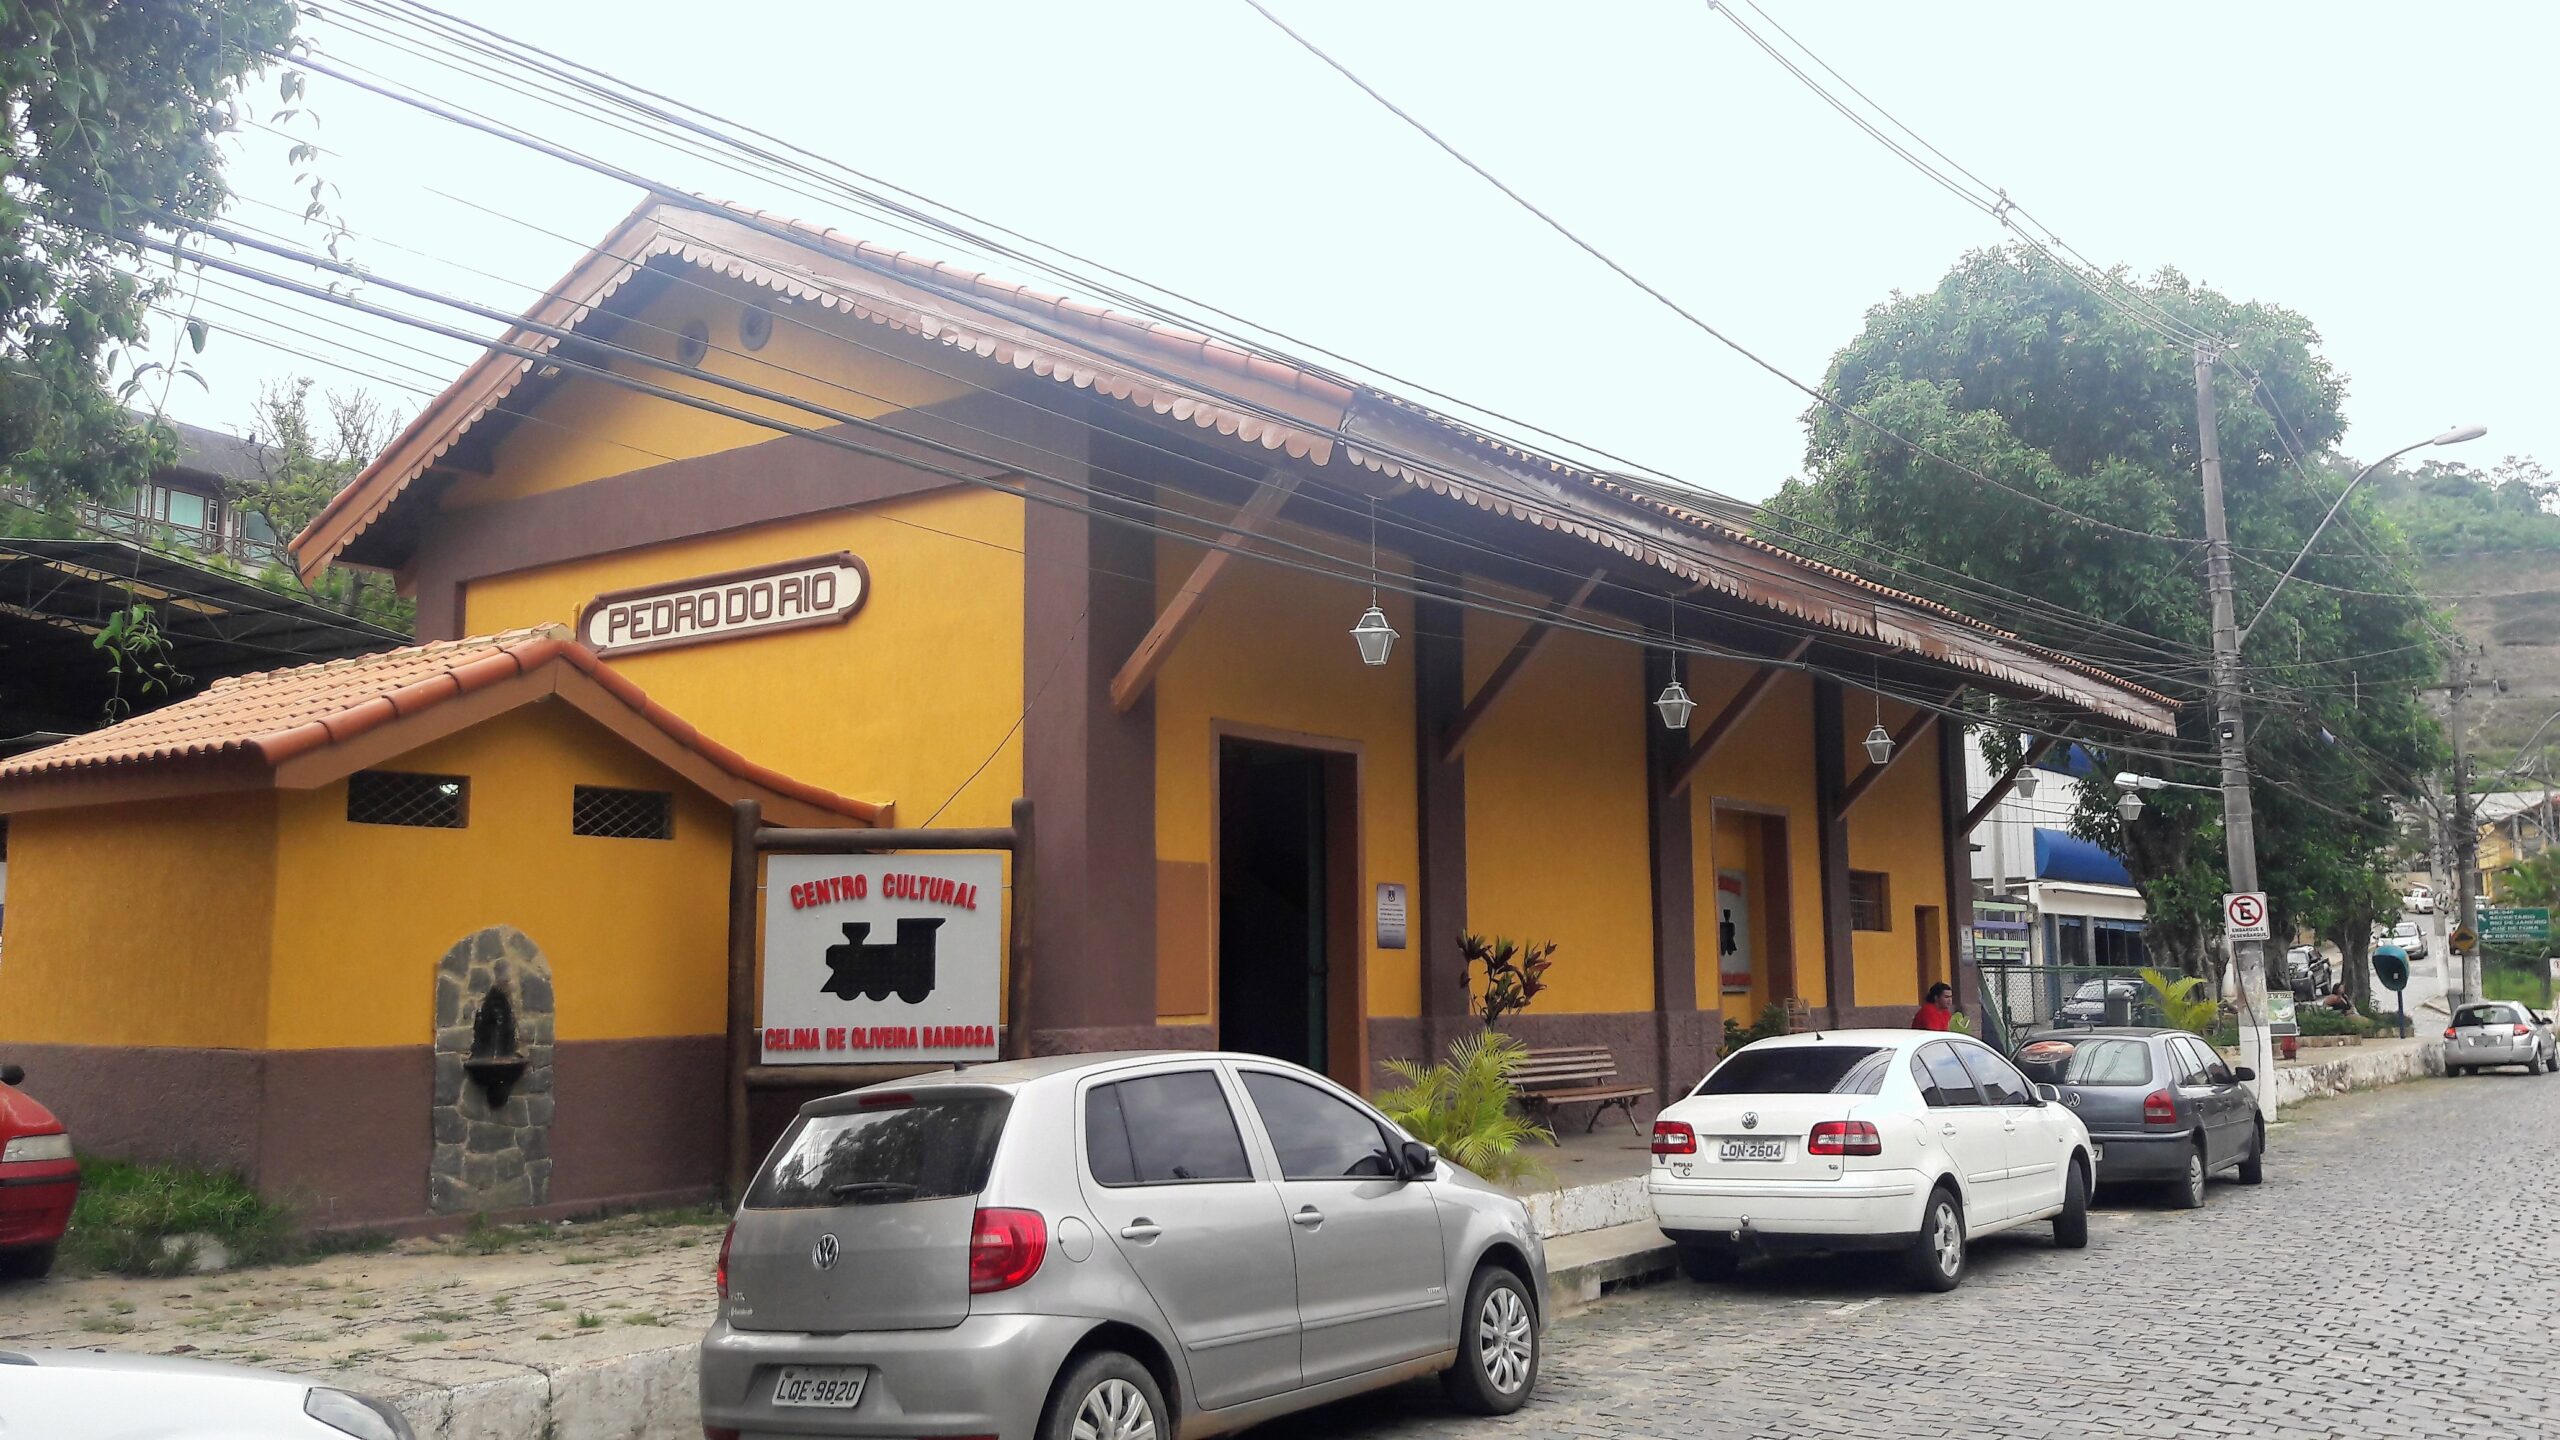 Centro Cultural de Pedro do Rio - Petrópolis